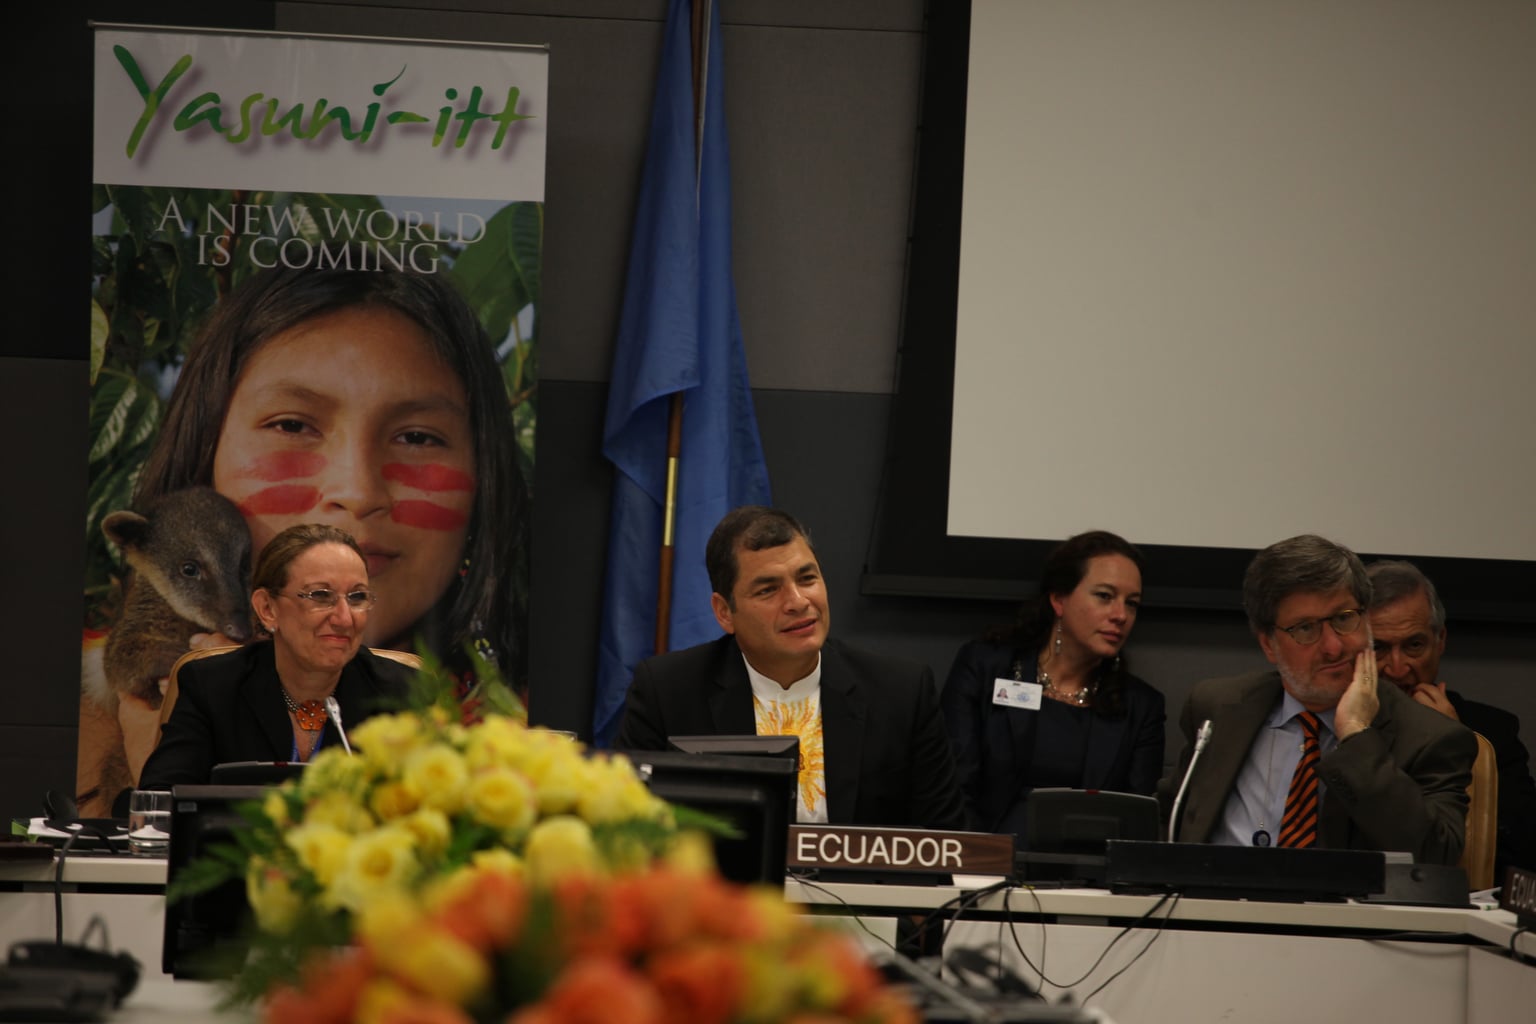 Il progetto Yasuní-ITT durante un incontro con le Nazioni Unite. Immagine ripresa da Flickr/Cancillería del Ecuador in licenza CC